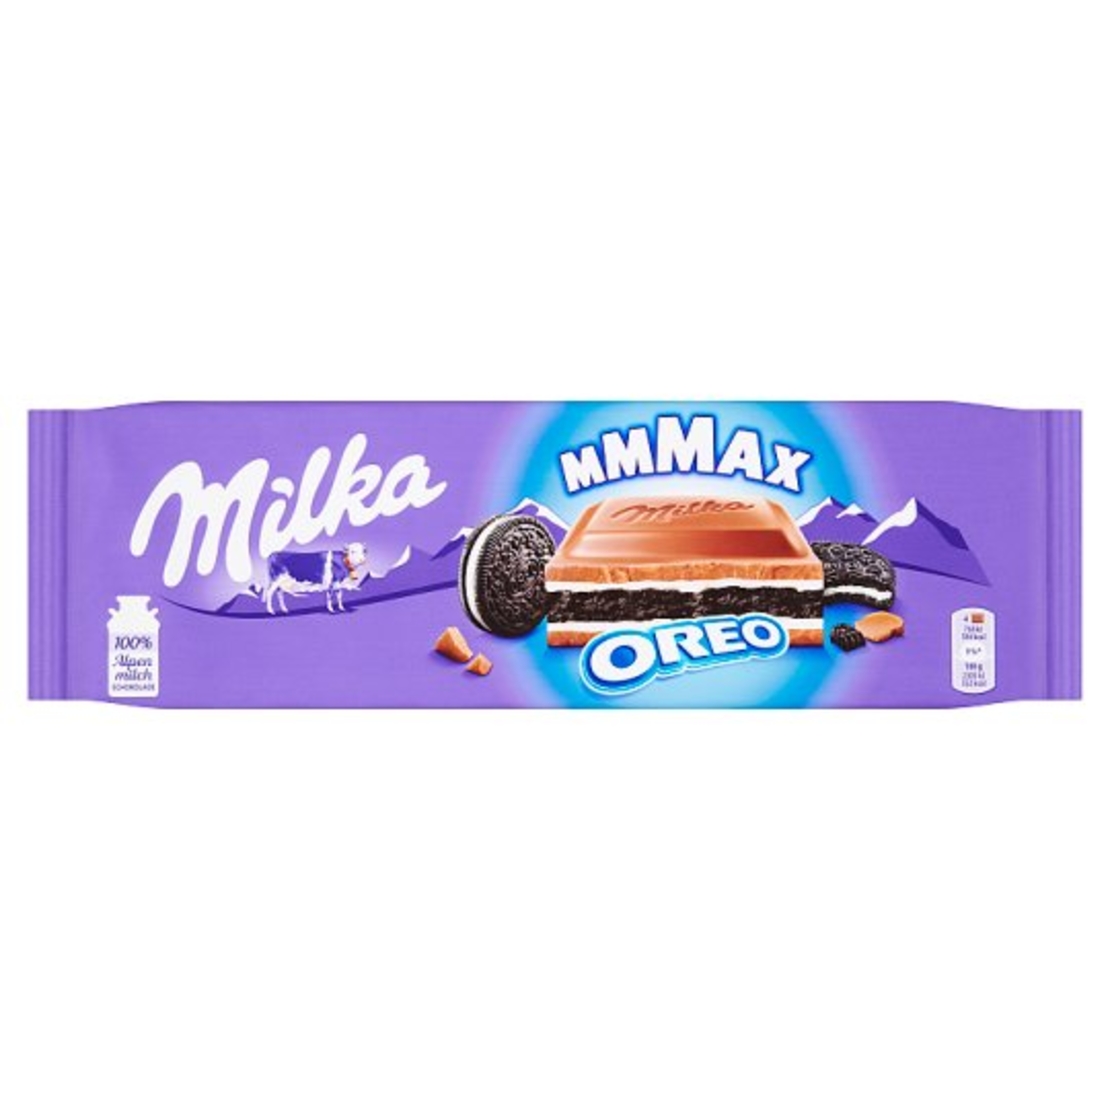 Milka - Mmmax - Oreo